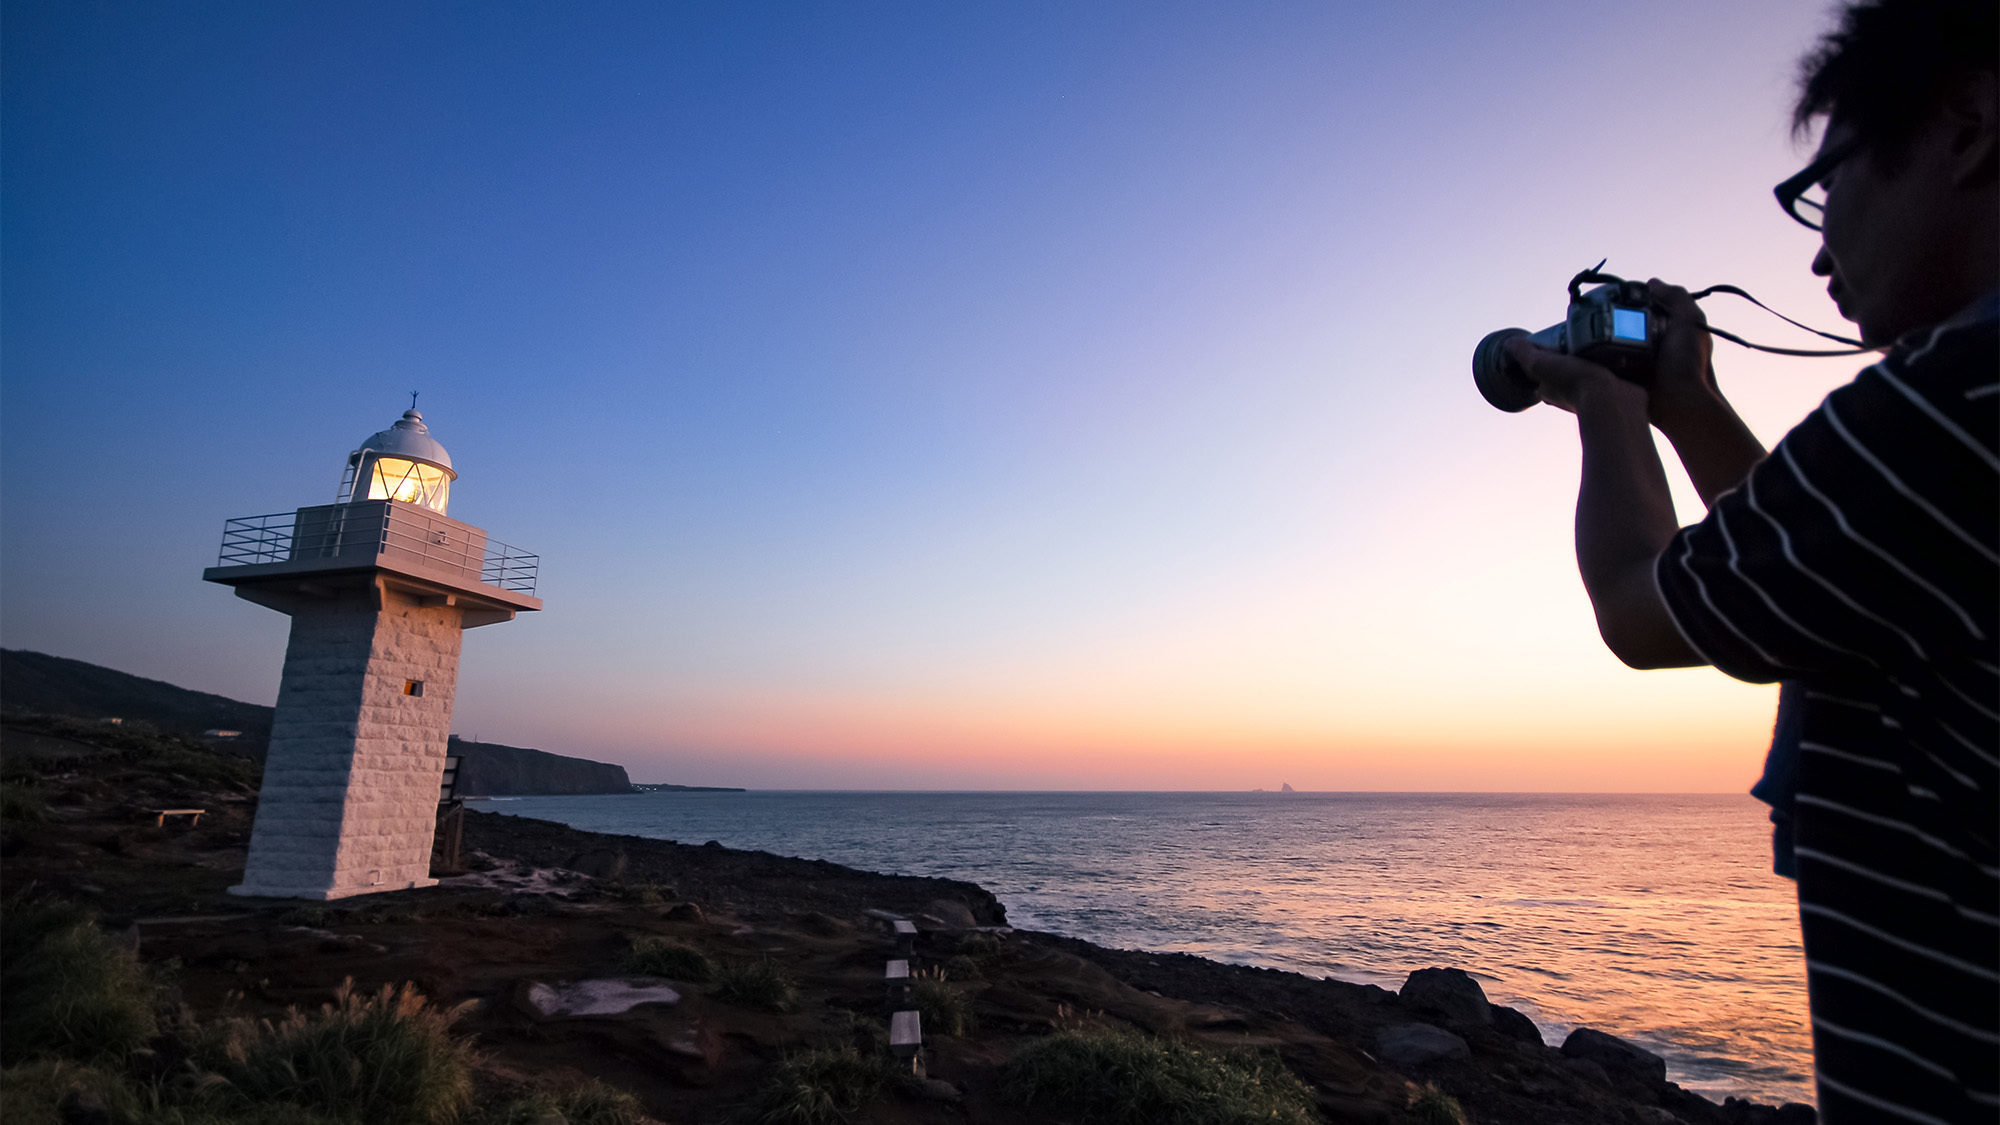 ・伊豆岬の灯台灯台以外に光が少ないので星空スポットとしても人気です